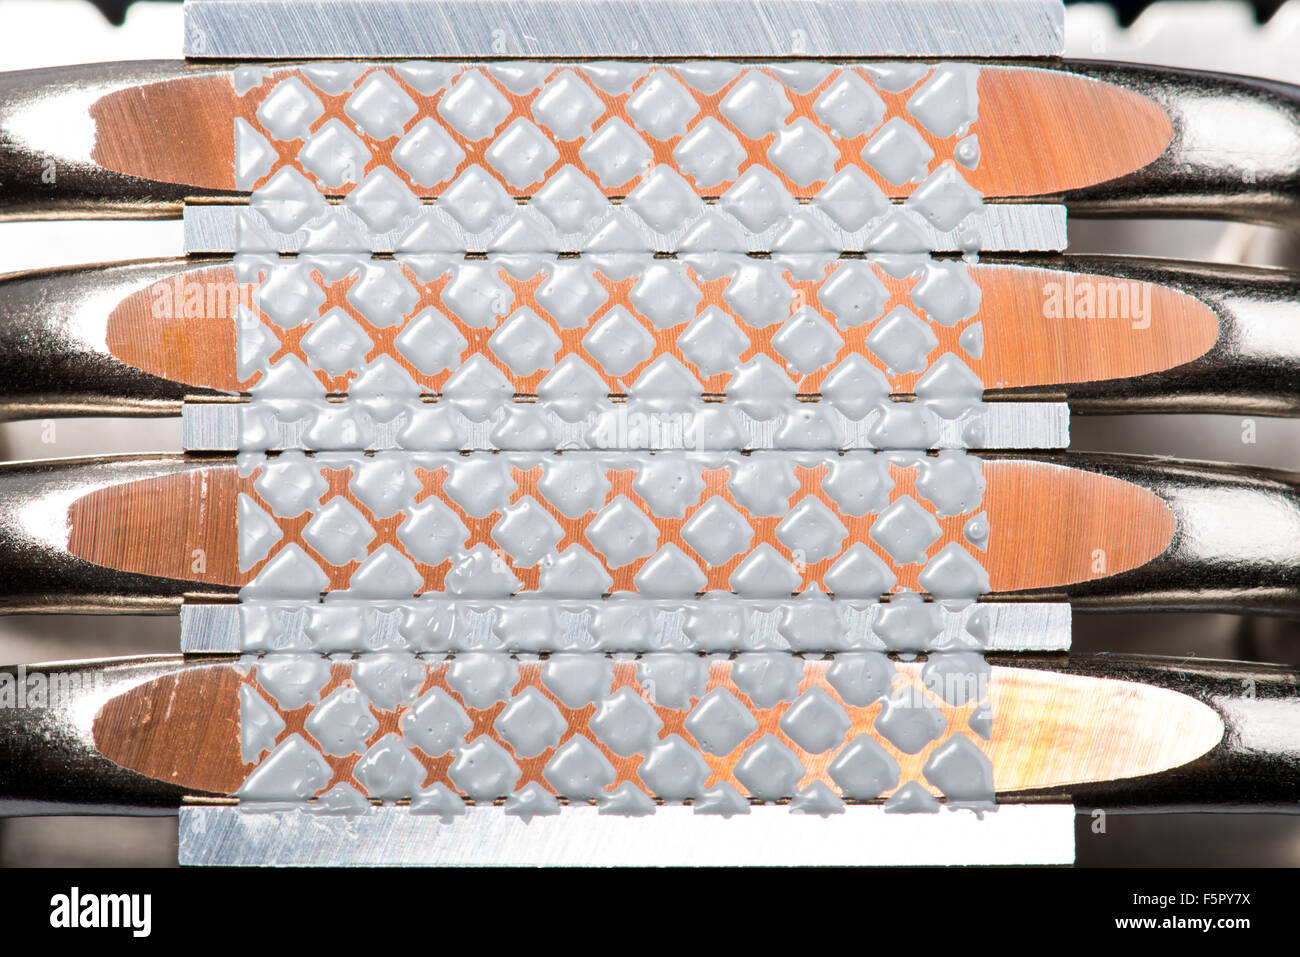 Dissipateur de chaleur en aluminium refroidisseur cpu isolated on white Banque D'Images